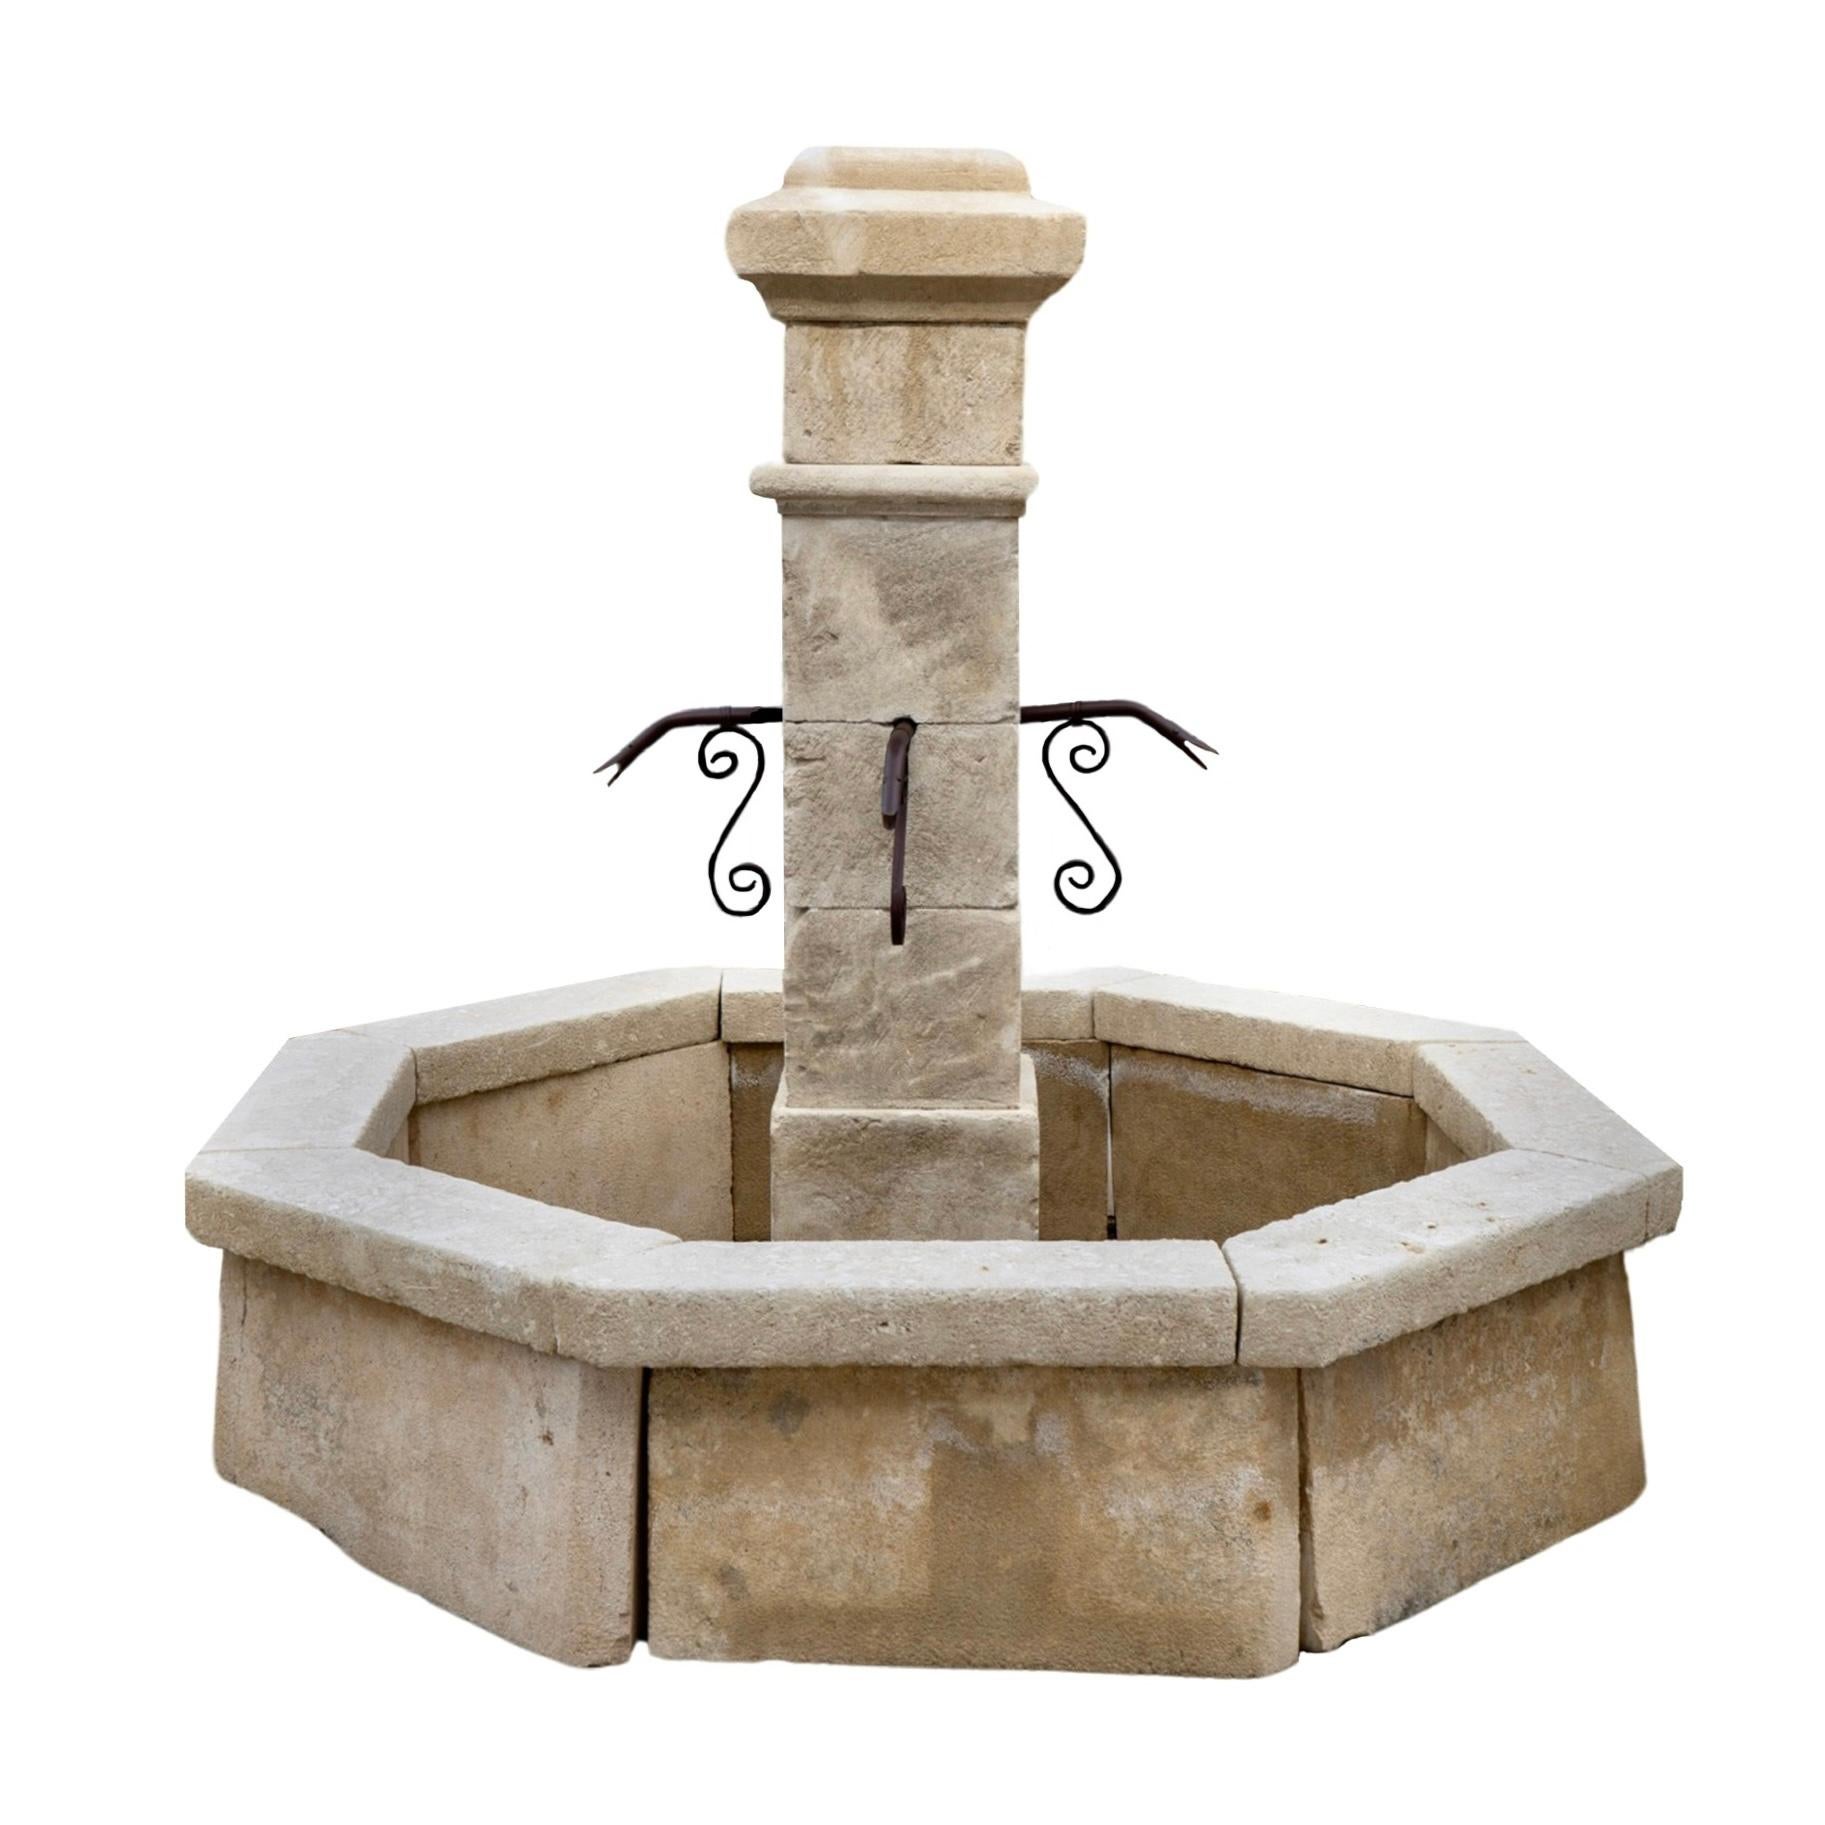 Découvrez l'élégance et la durabilité de notre fontaine centrale en pierre calcaire française. Fabriquée dans les années 1890, cette fontaine de style central est construite en pierre calcaire de haute qualité, ce qui lui assure une longévité et une